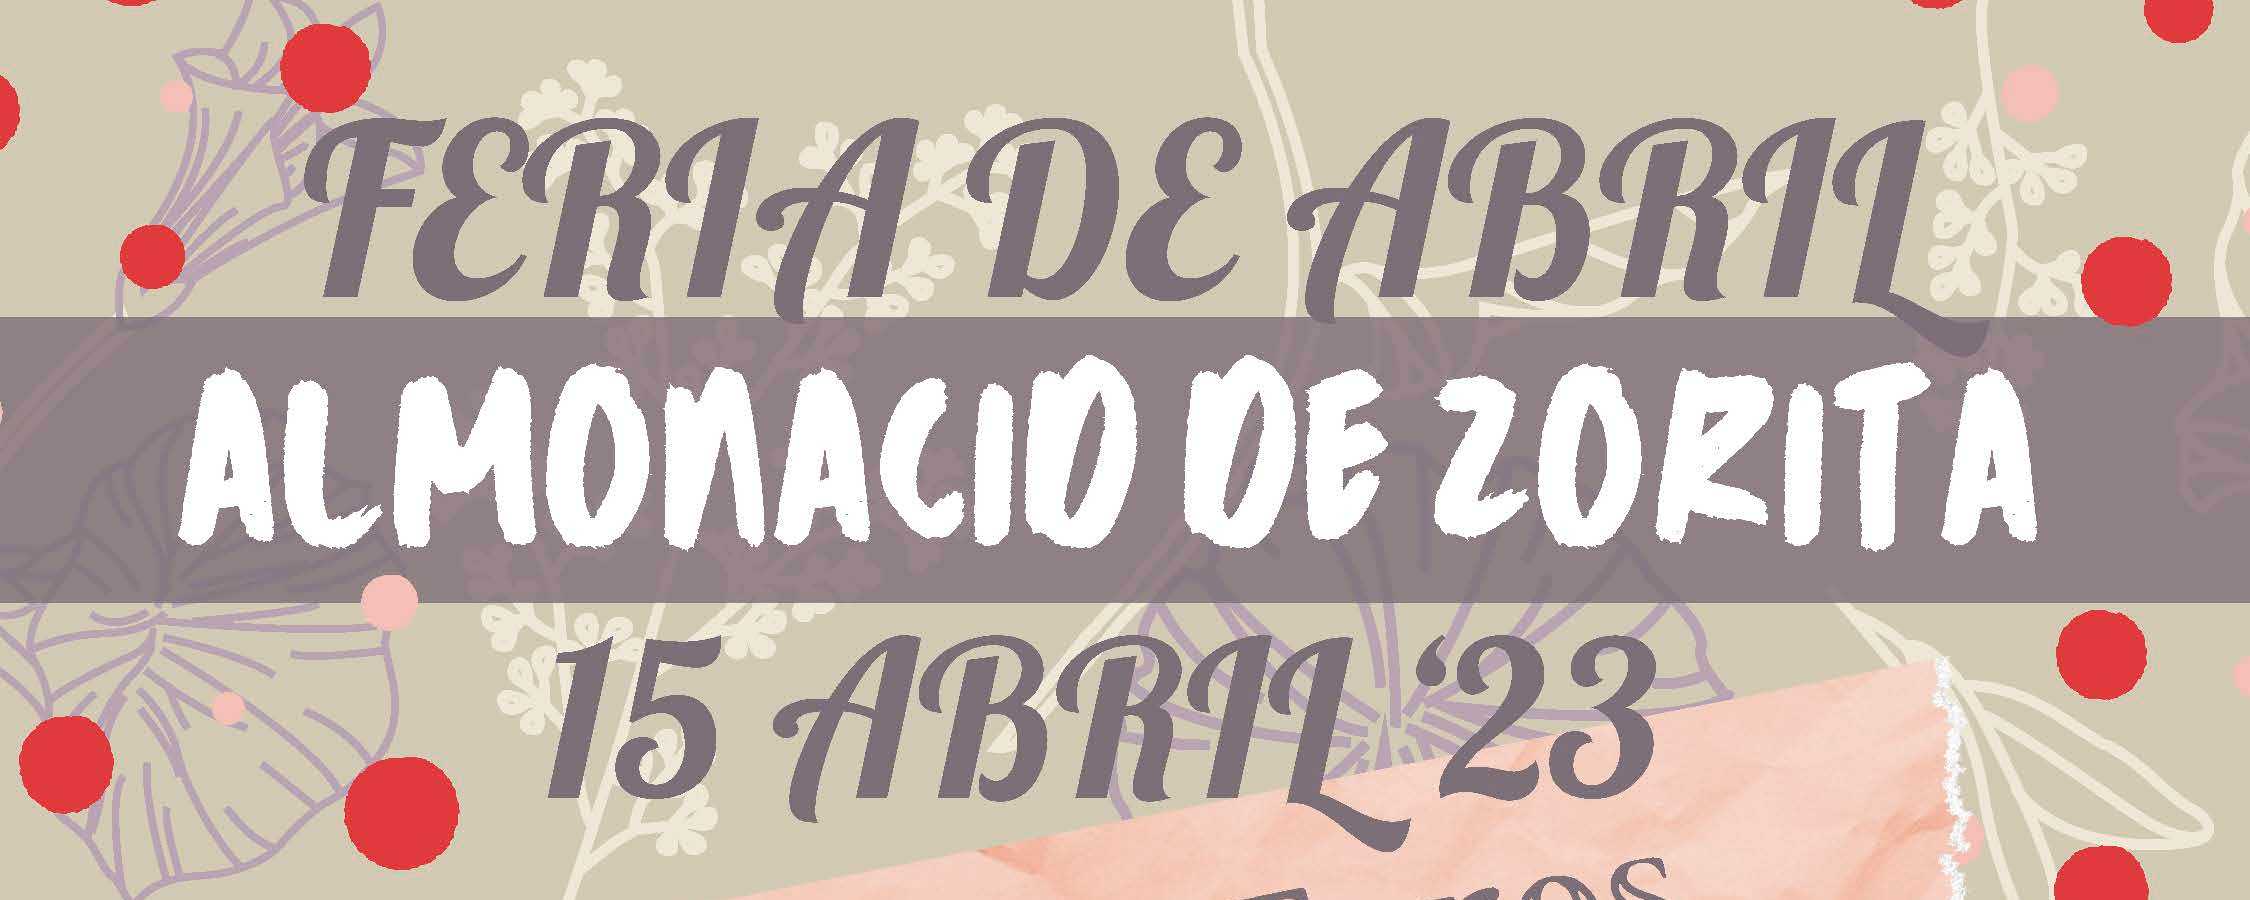 Almonacid celebra este sábado su II Feria de Abril